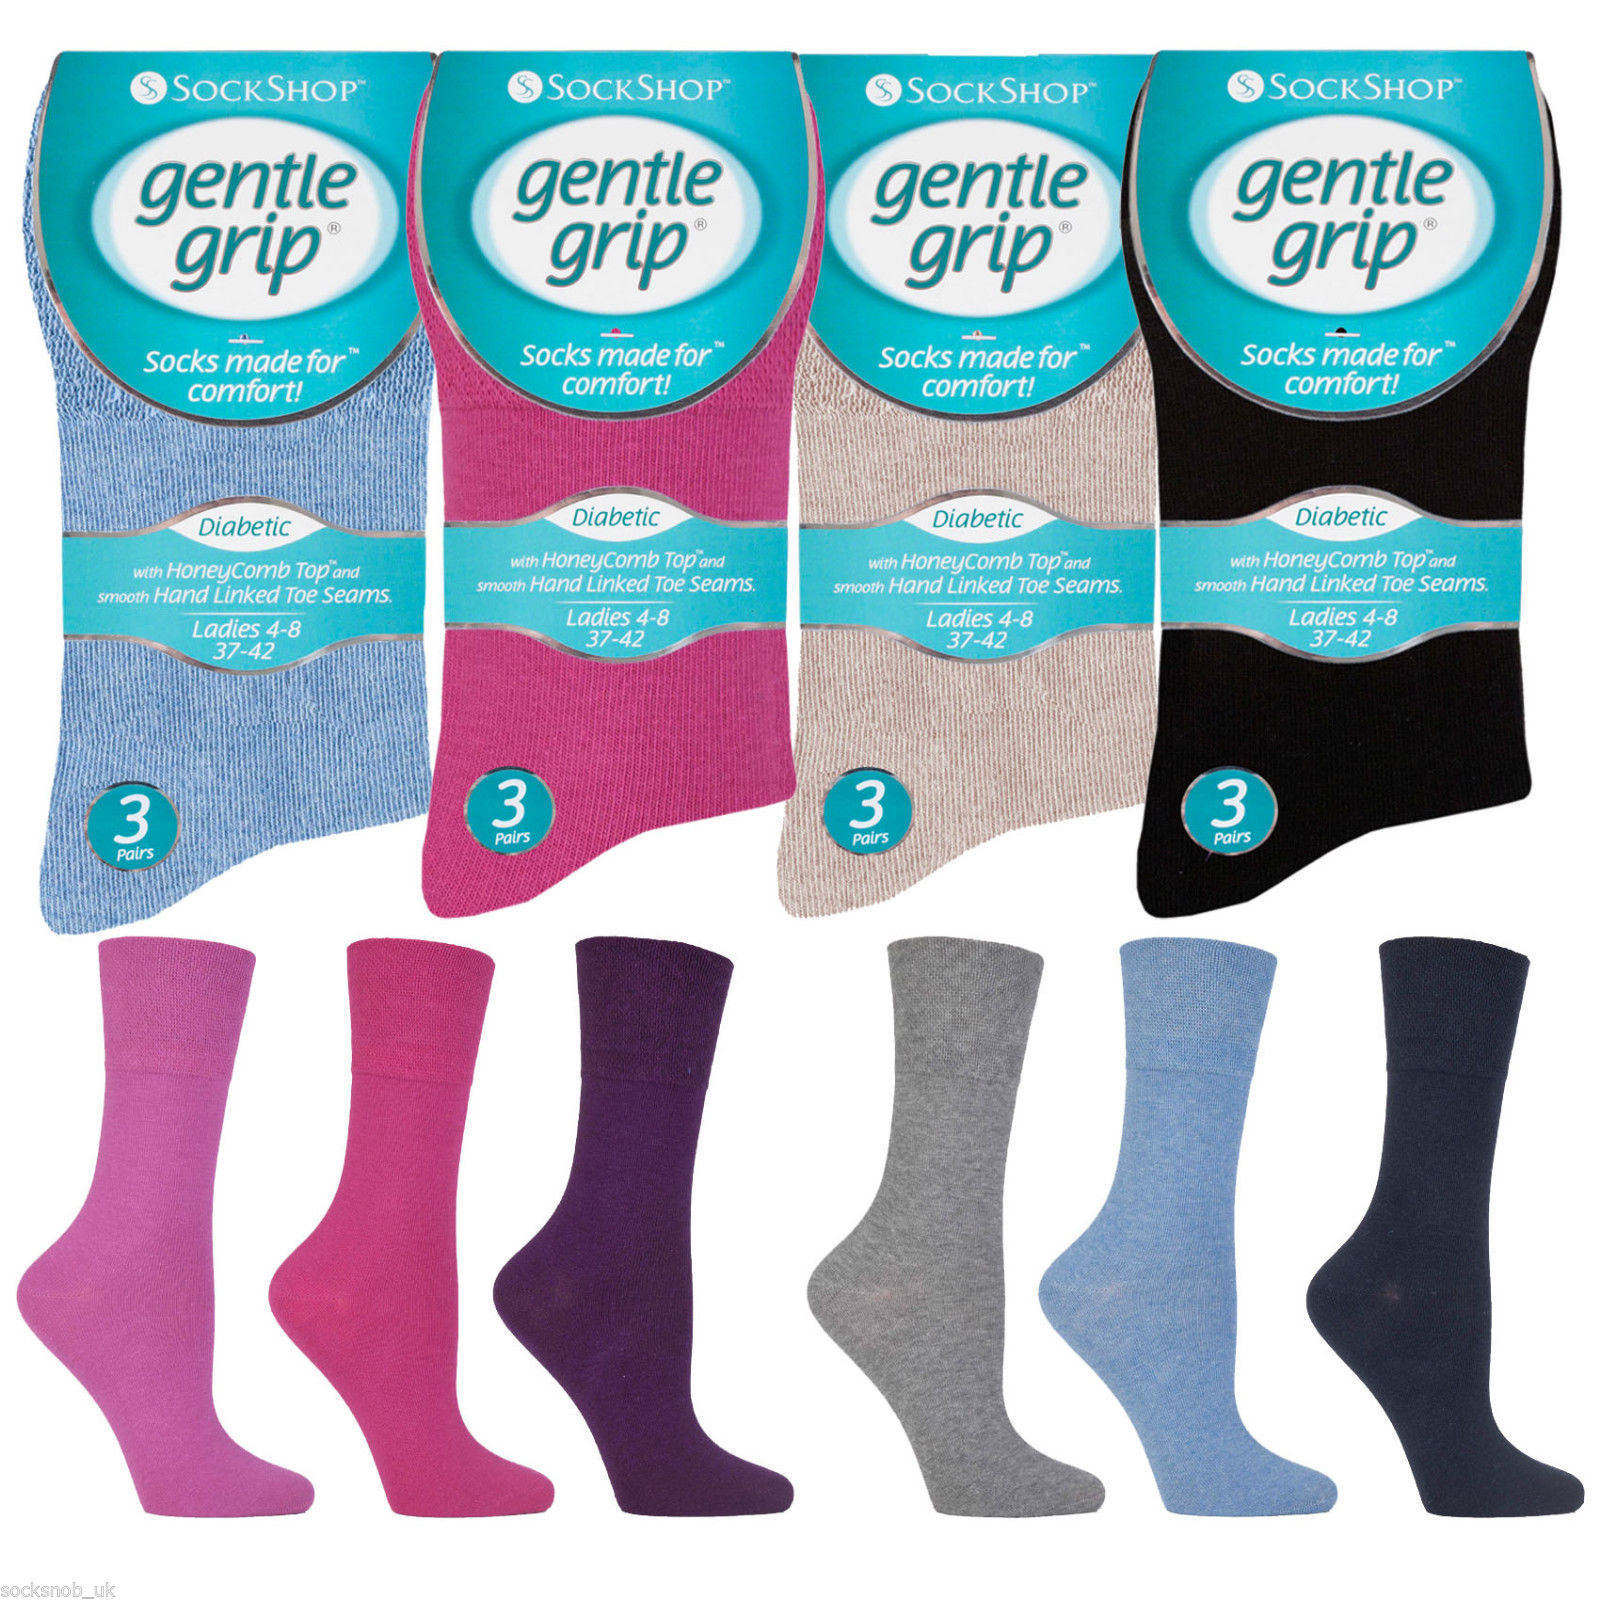 6 Pairs Ladies Sockshop Gentle Grip Diabetic Medical Socks Size 4-8 Uk 37-42 Eu